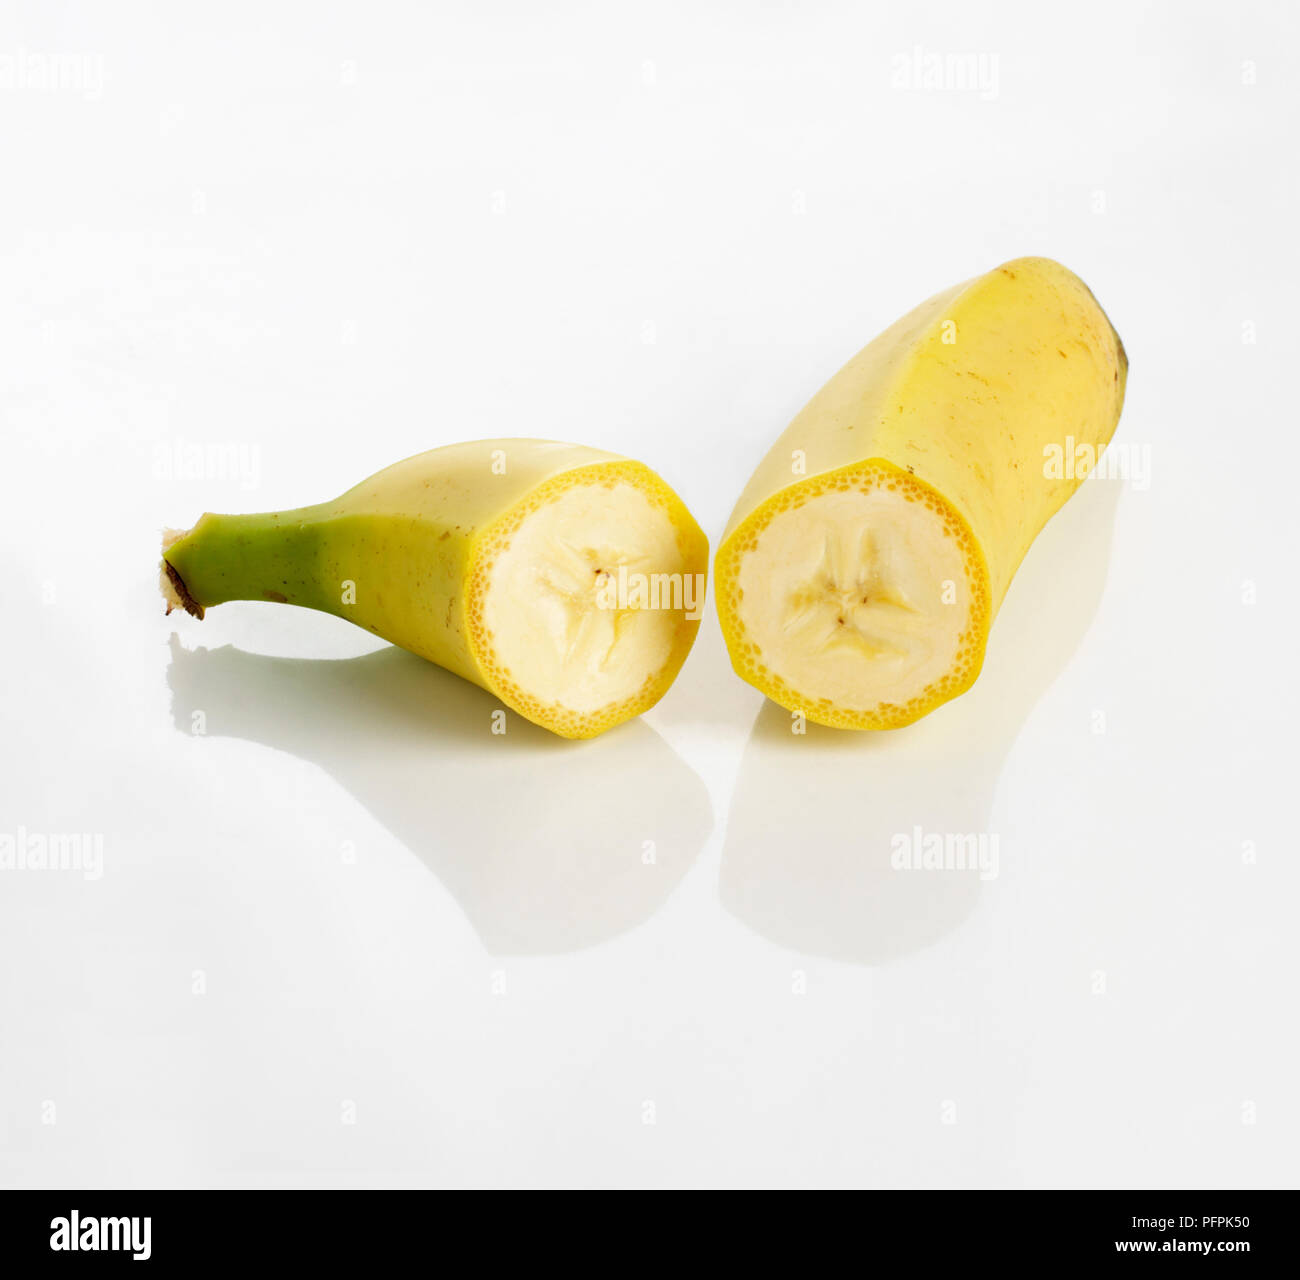 Banana cut in half Stock Photo